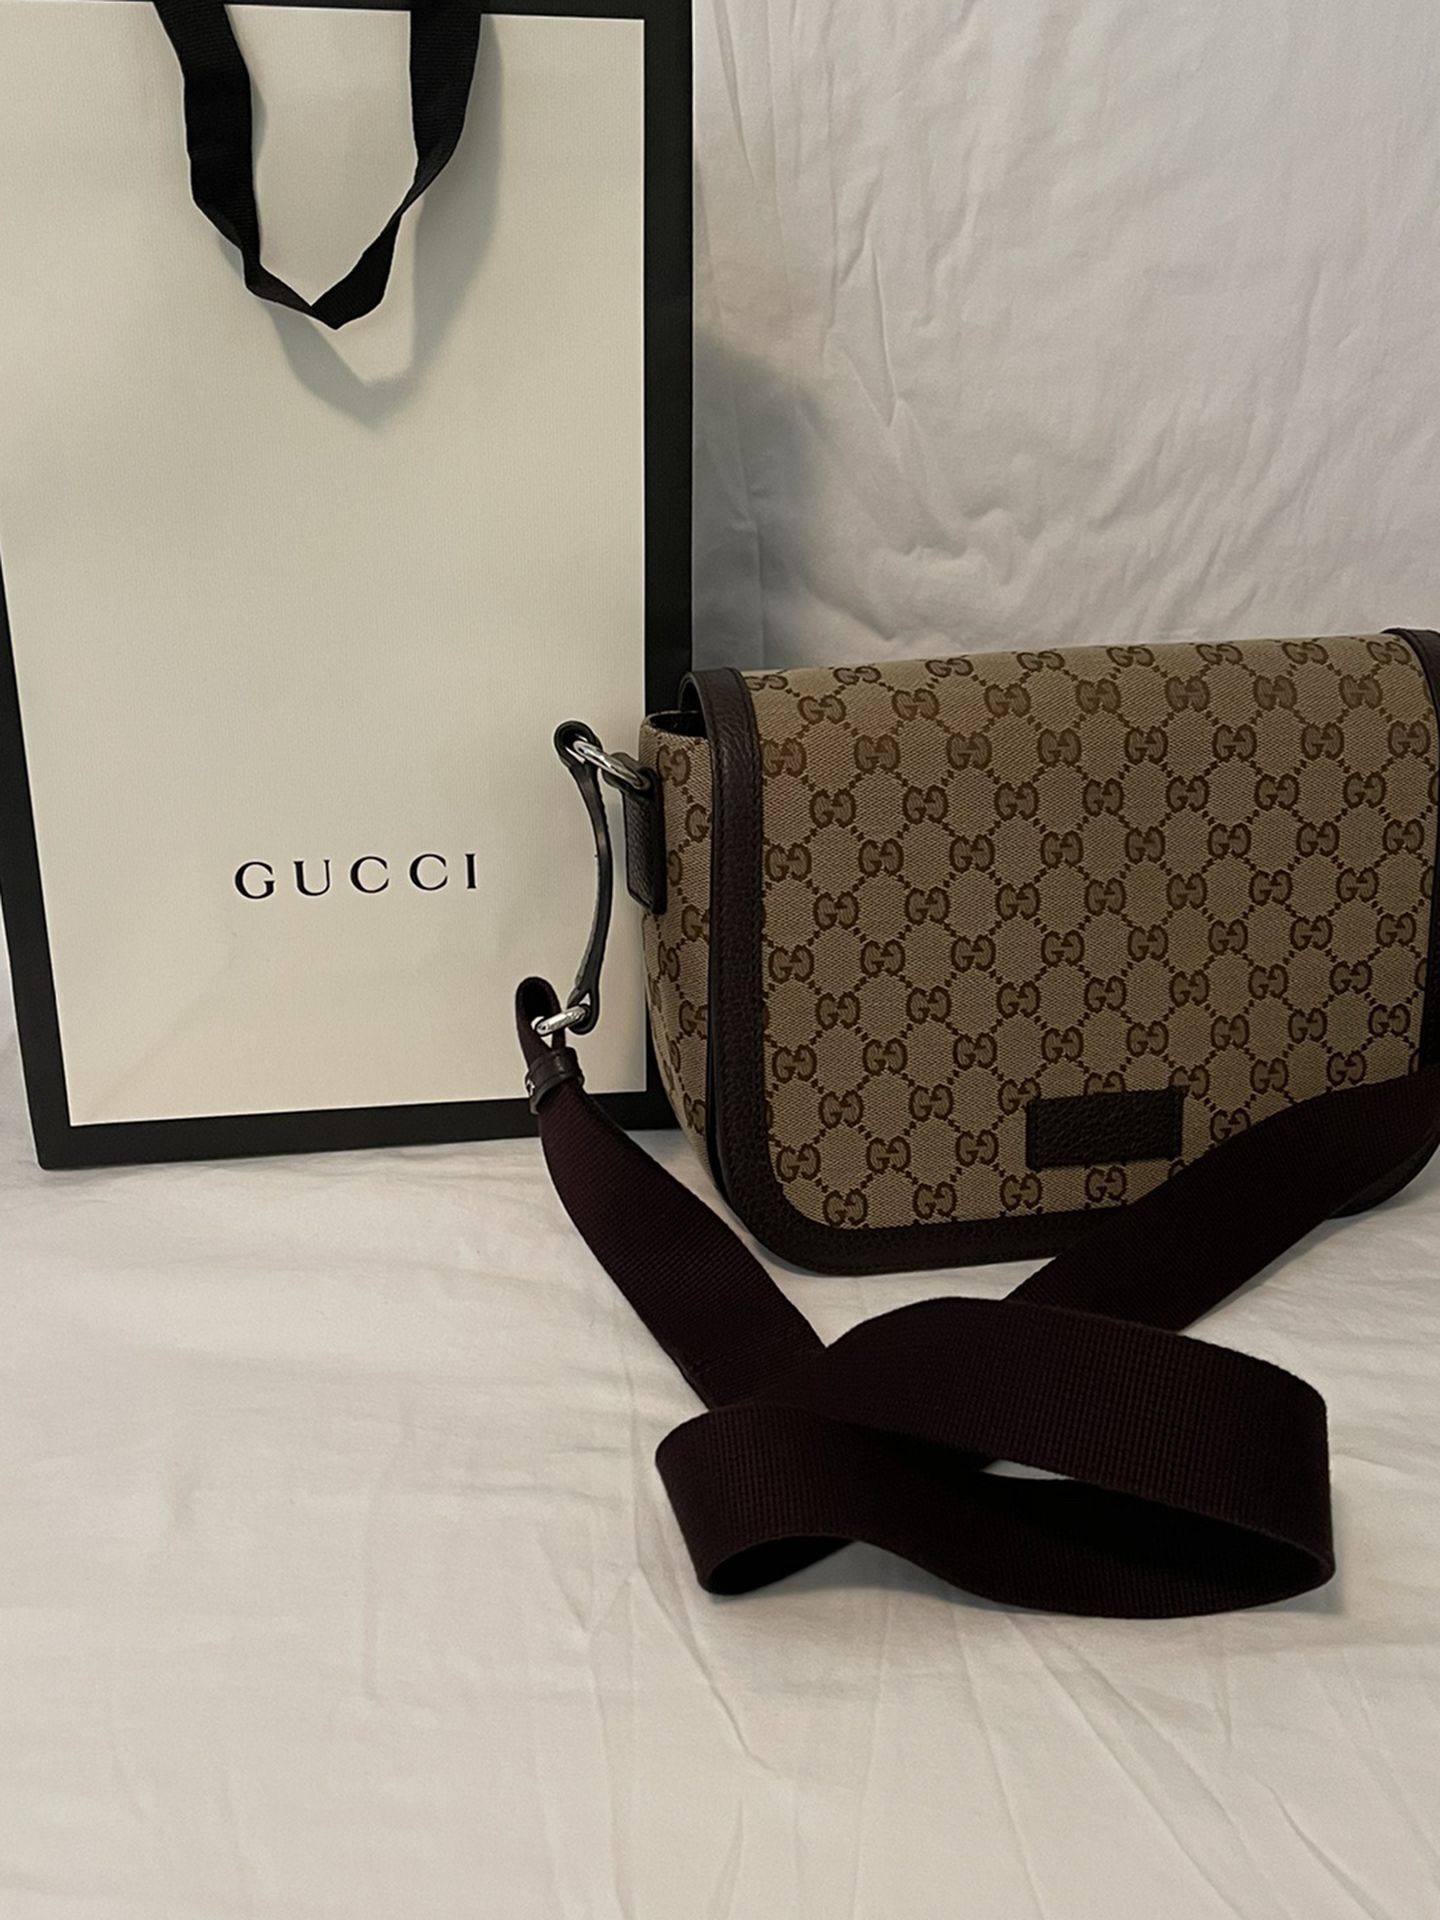 Gucci Messenger Bag Authentic !!!